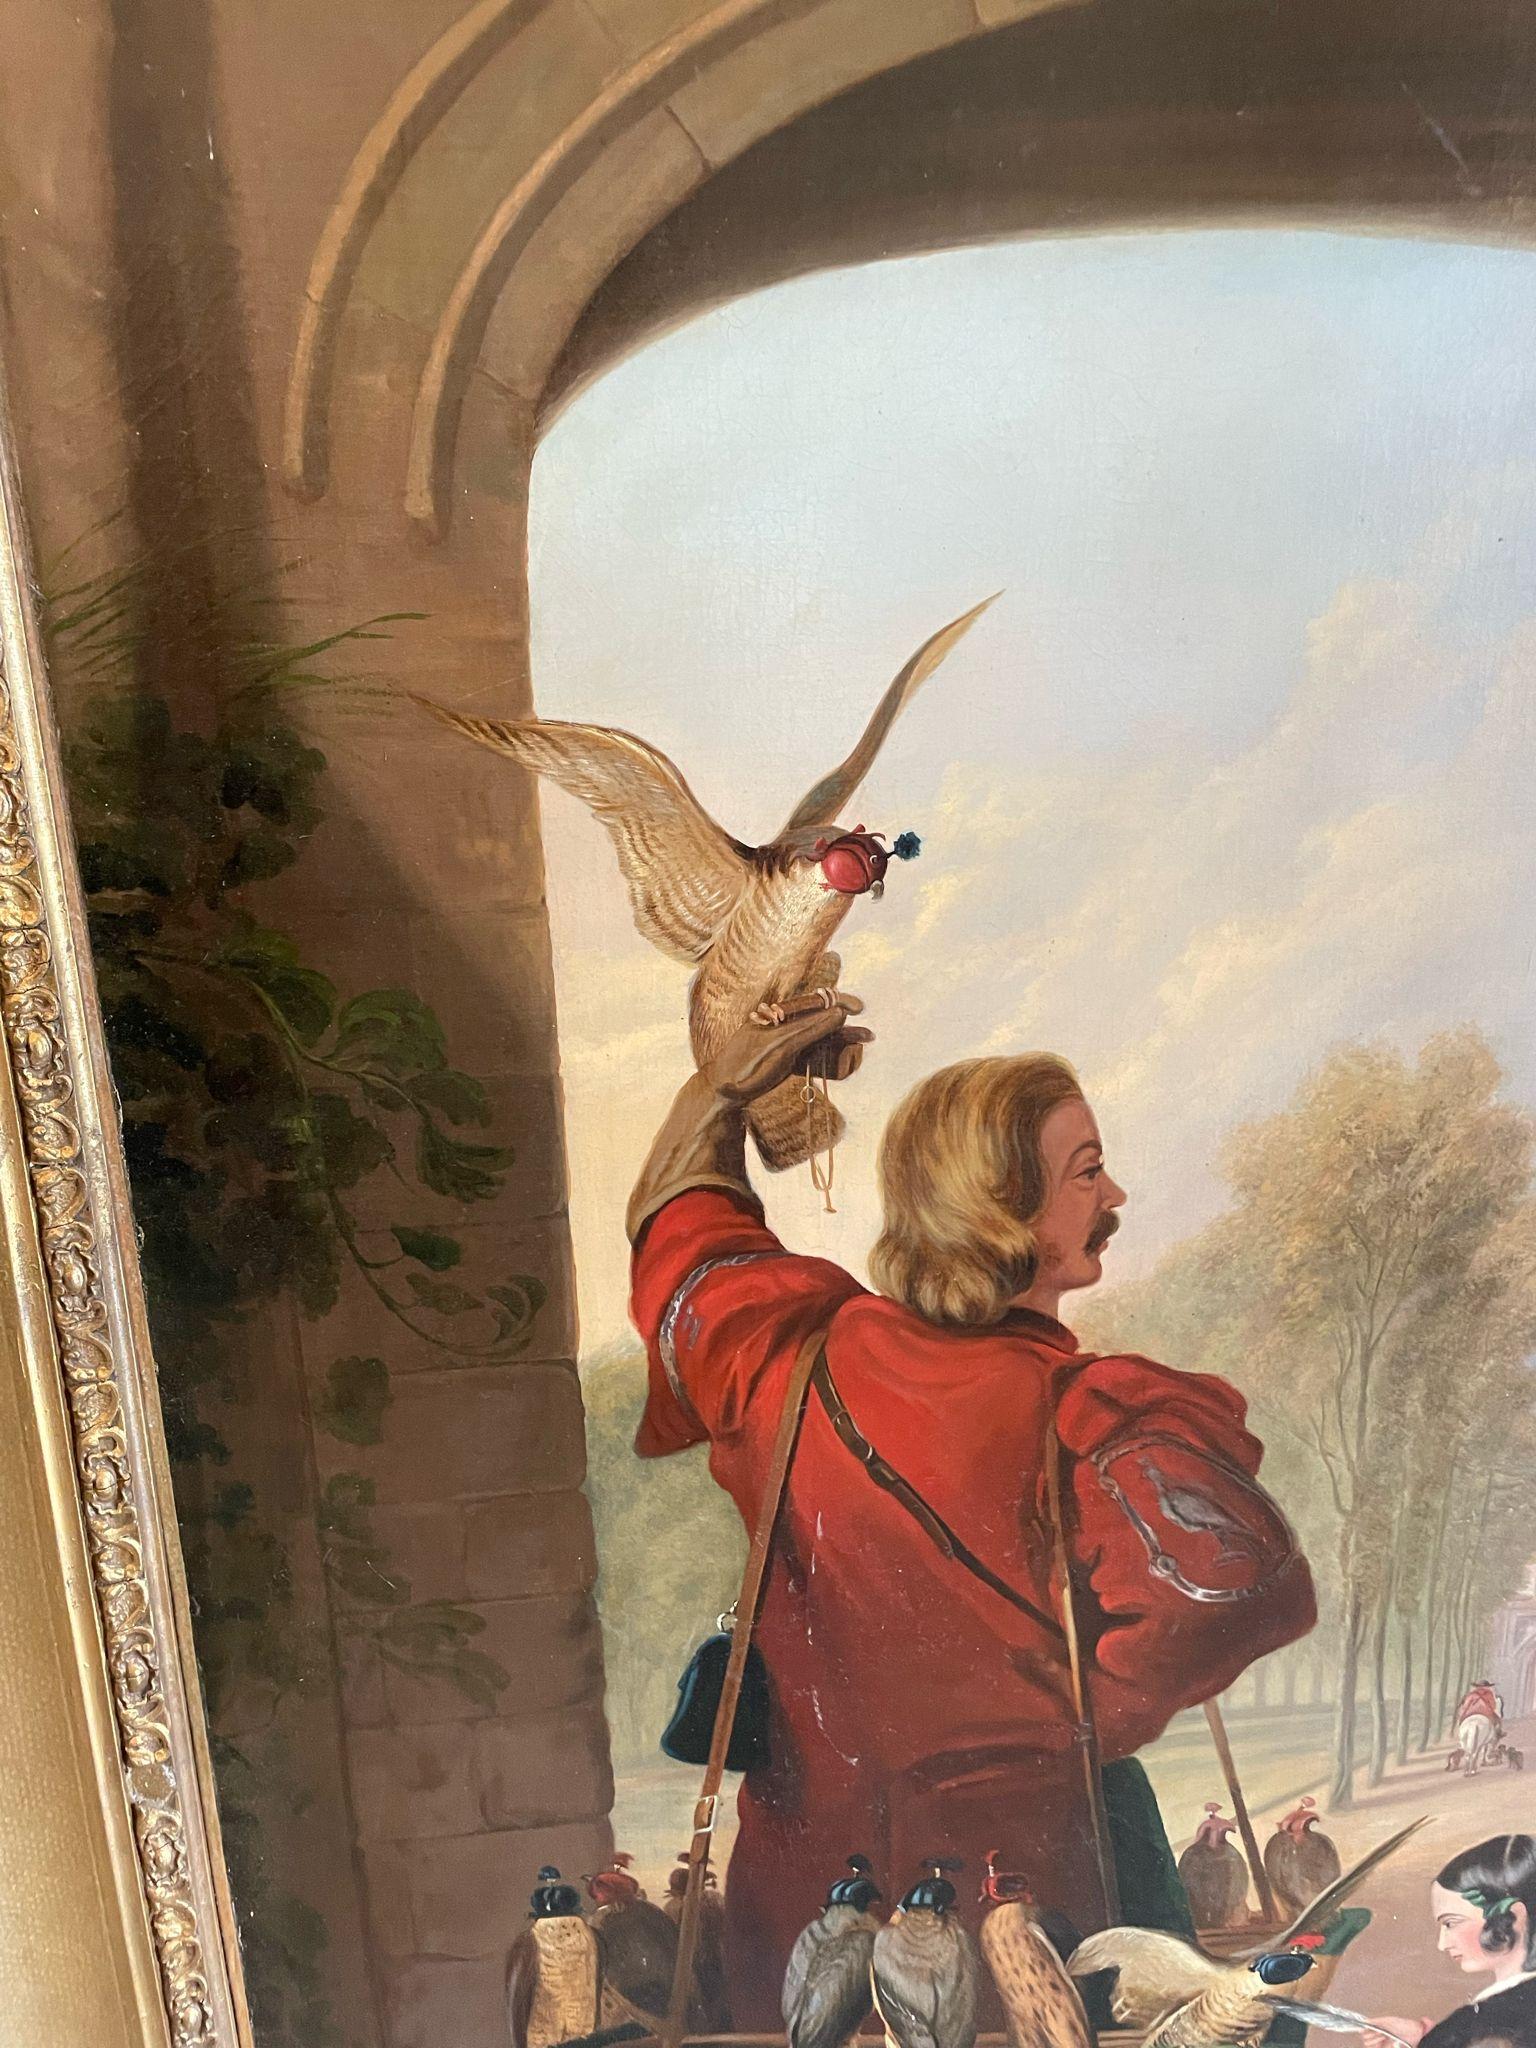 Une très grande huile sur toile peinte à l'arrière. Sir Edwin Henry Landseer, RA du retour de HENRY mesurant 177 x 263 x 12 cm (cadre compris). Le tableau représente une scène près de l'entrée voûtée d'un escalier en pierre. Une femme à cheval tient